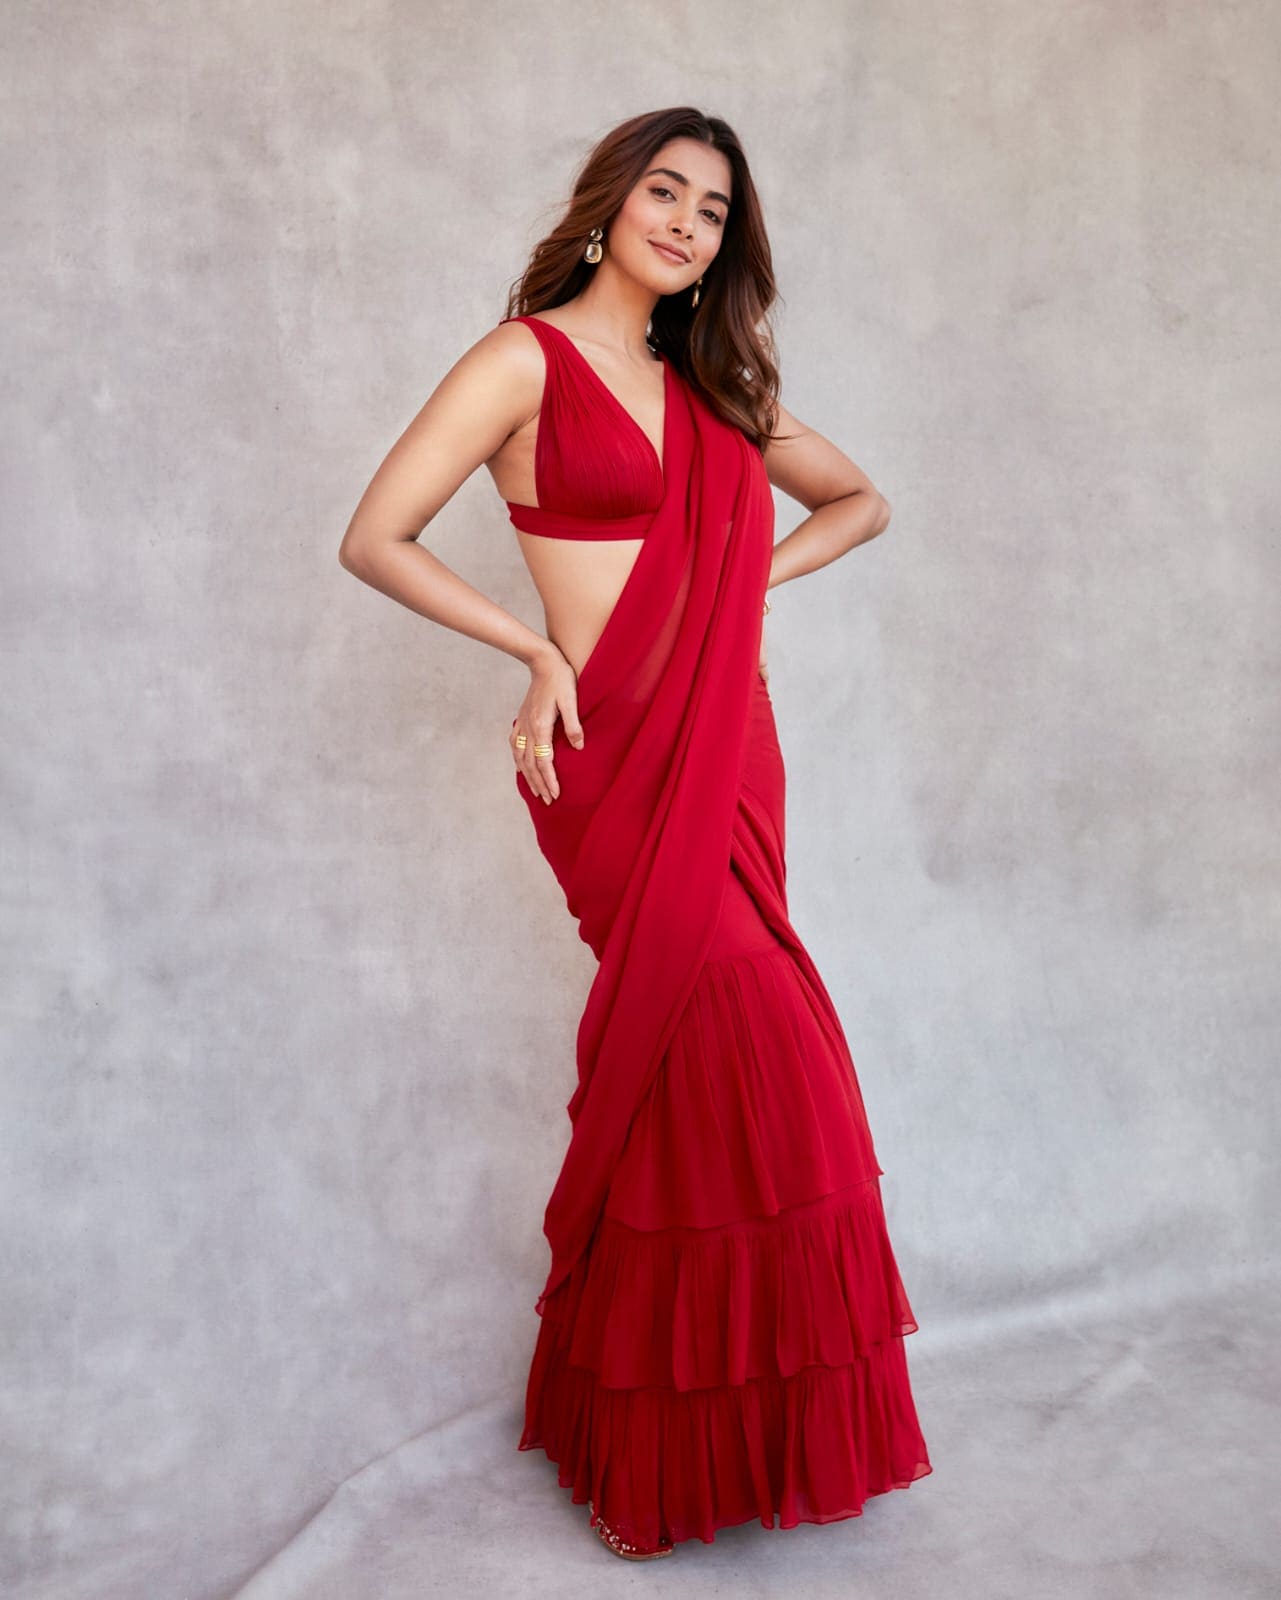 Pooja Hegde Looks Fiery HOT in Red Slit Dress